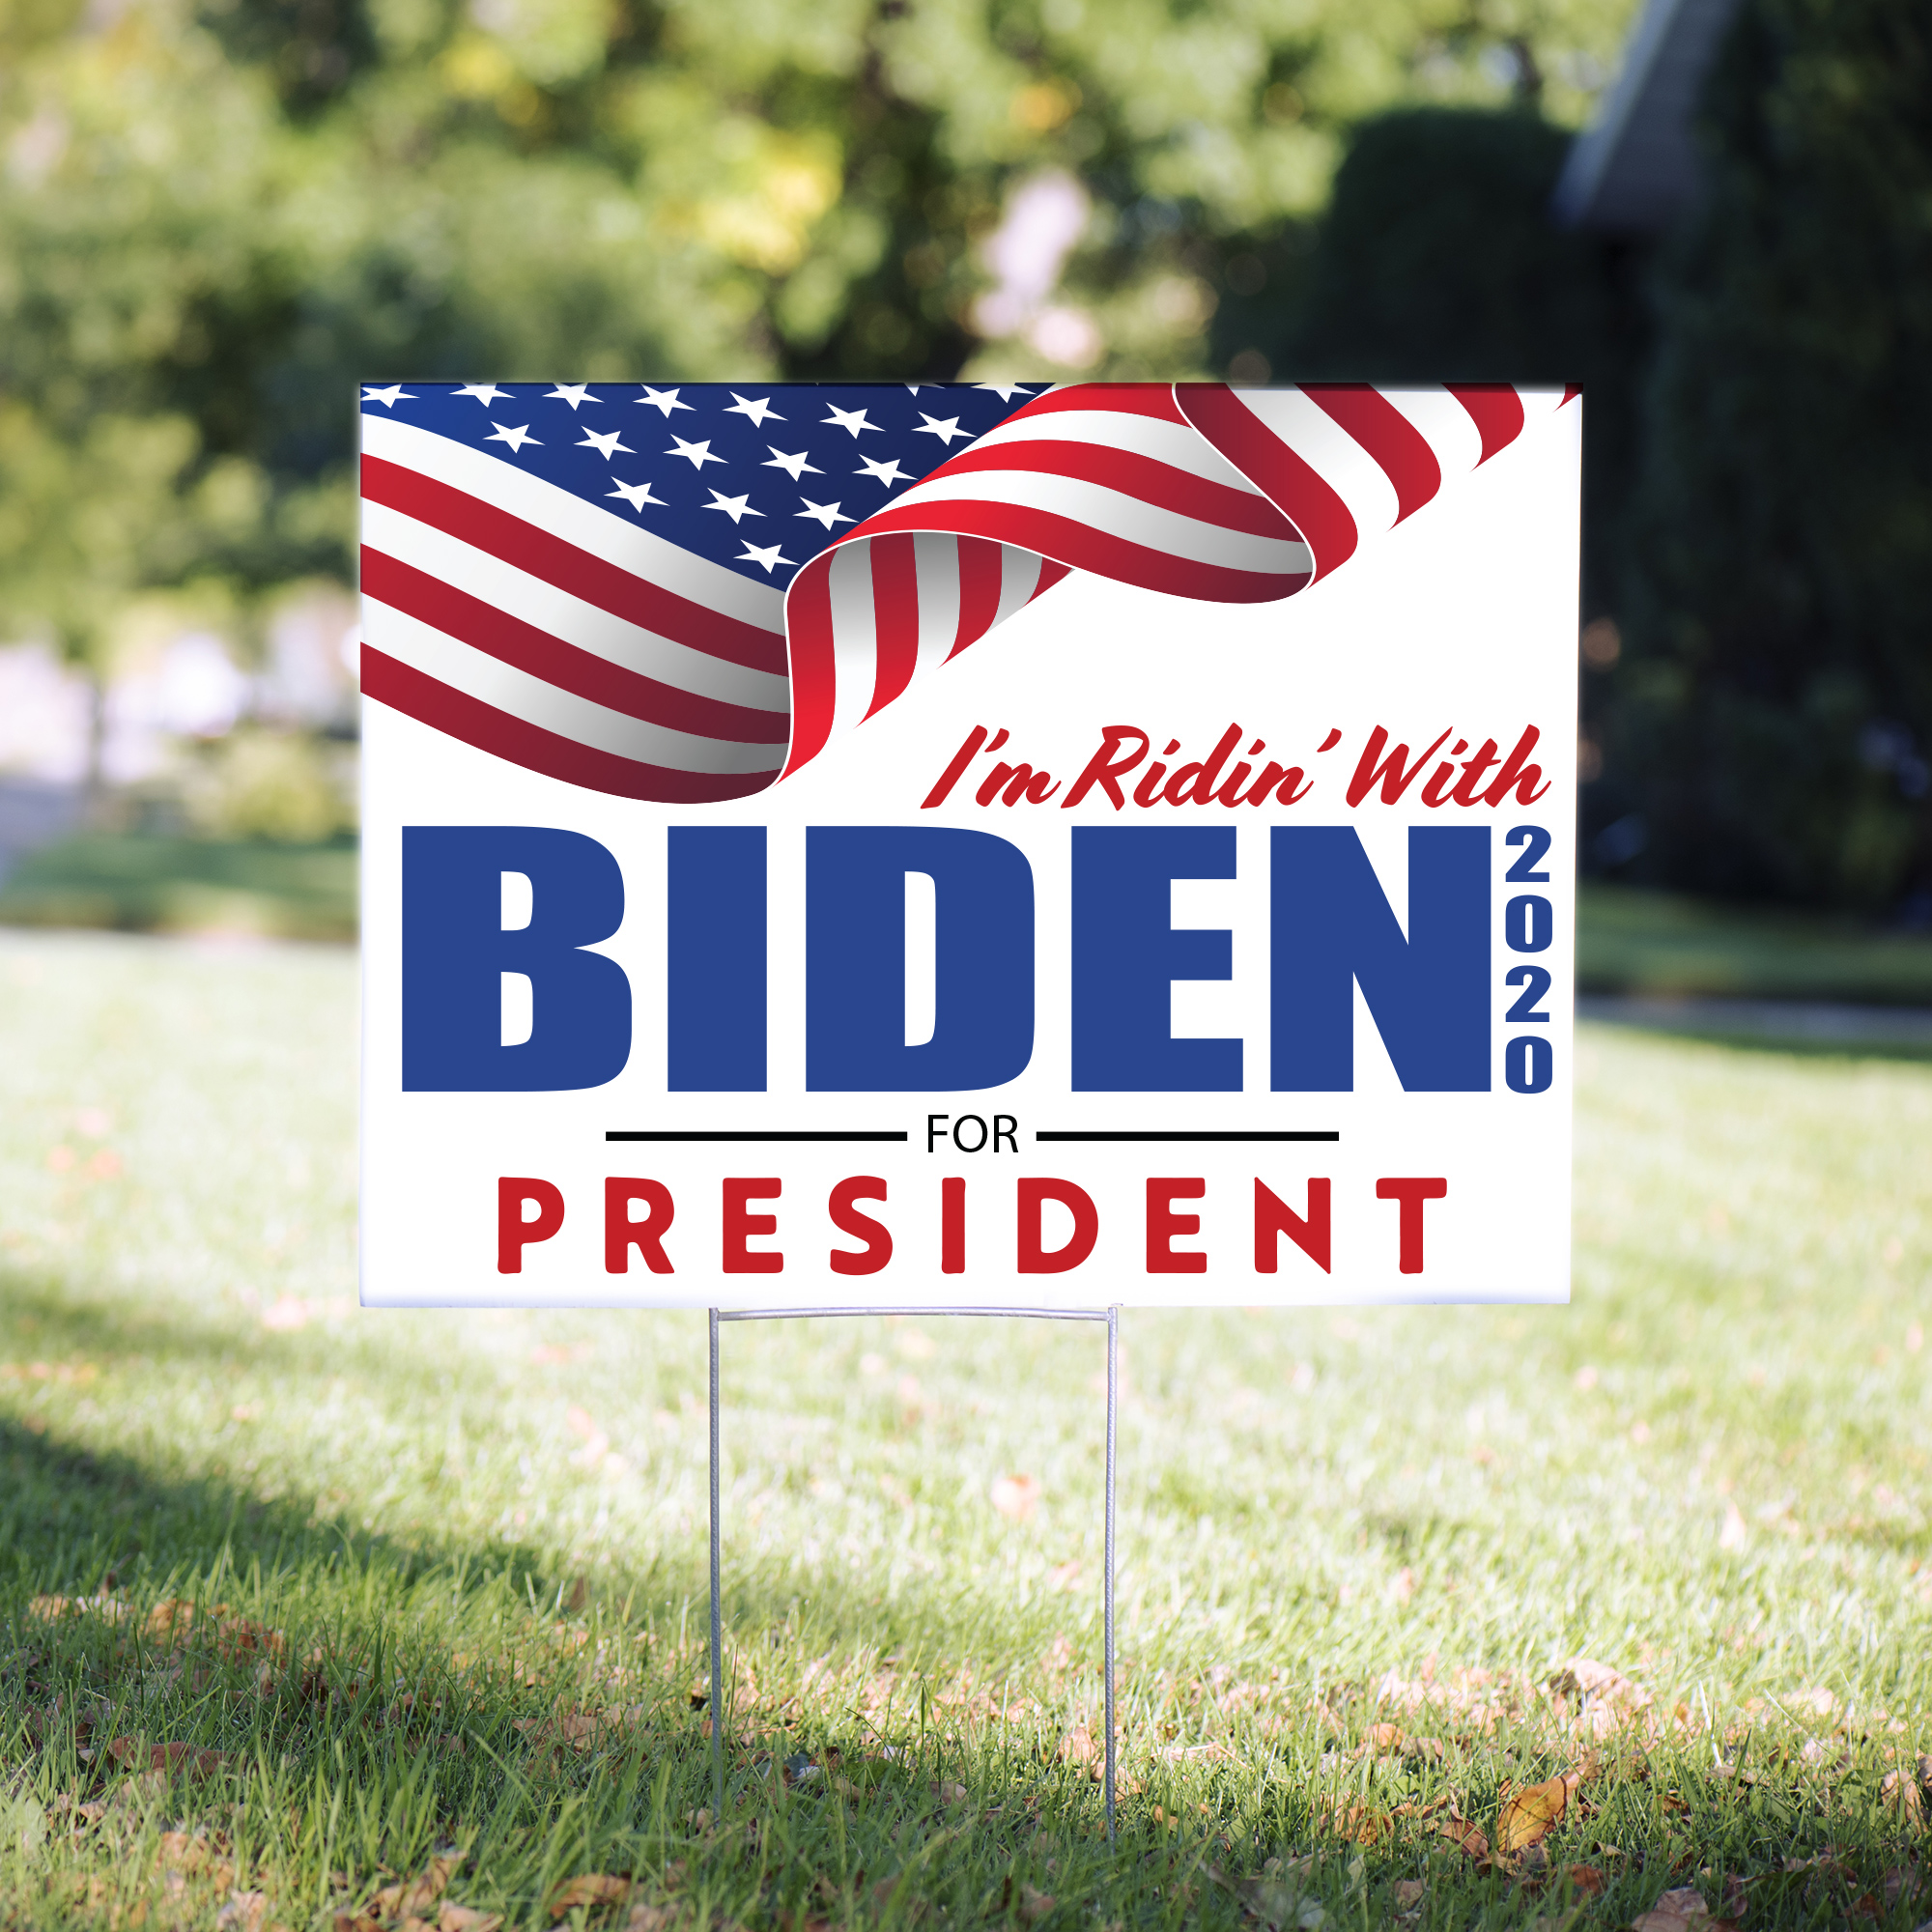 Biden Wavy Flag 2020 Political Yard Sign - 24 x 18 inch